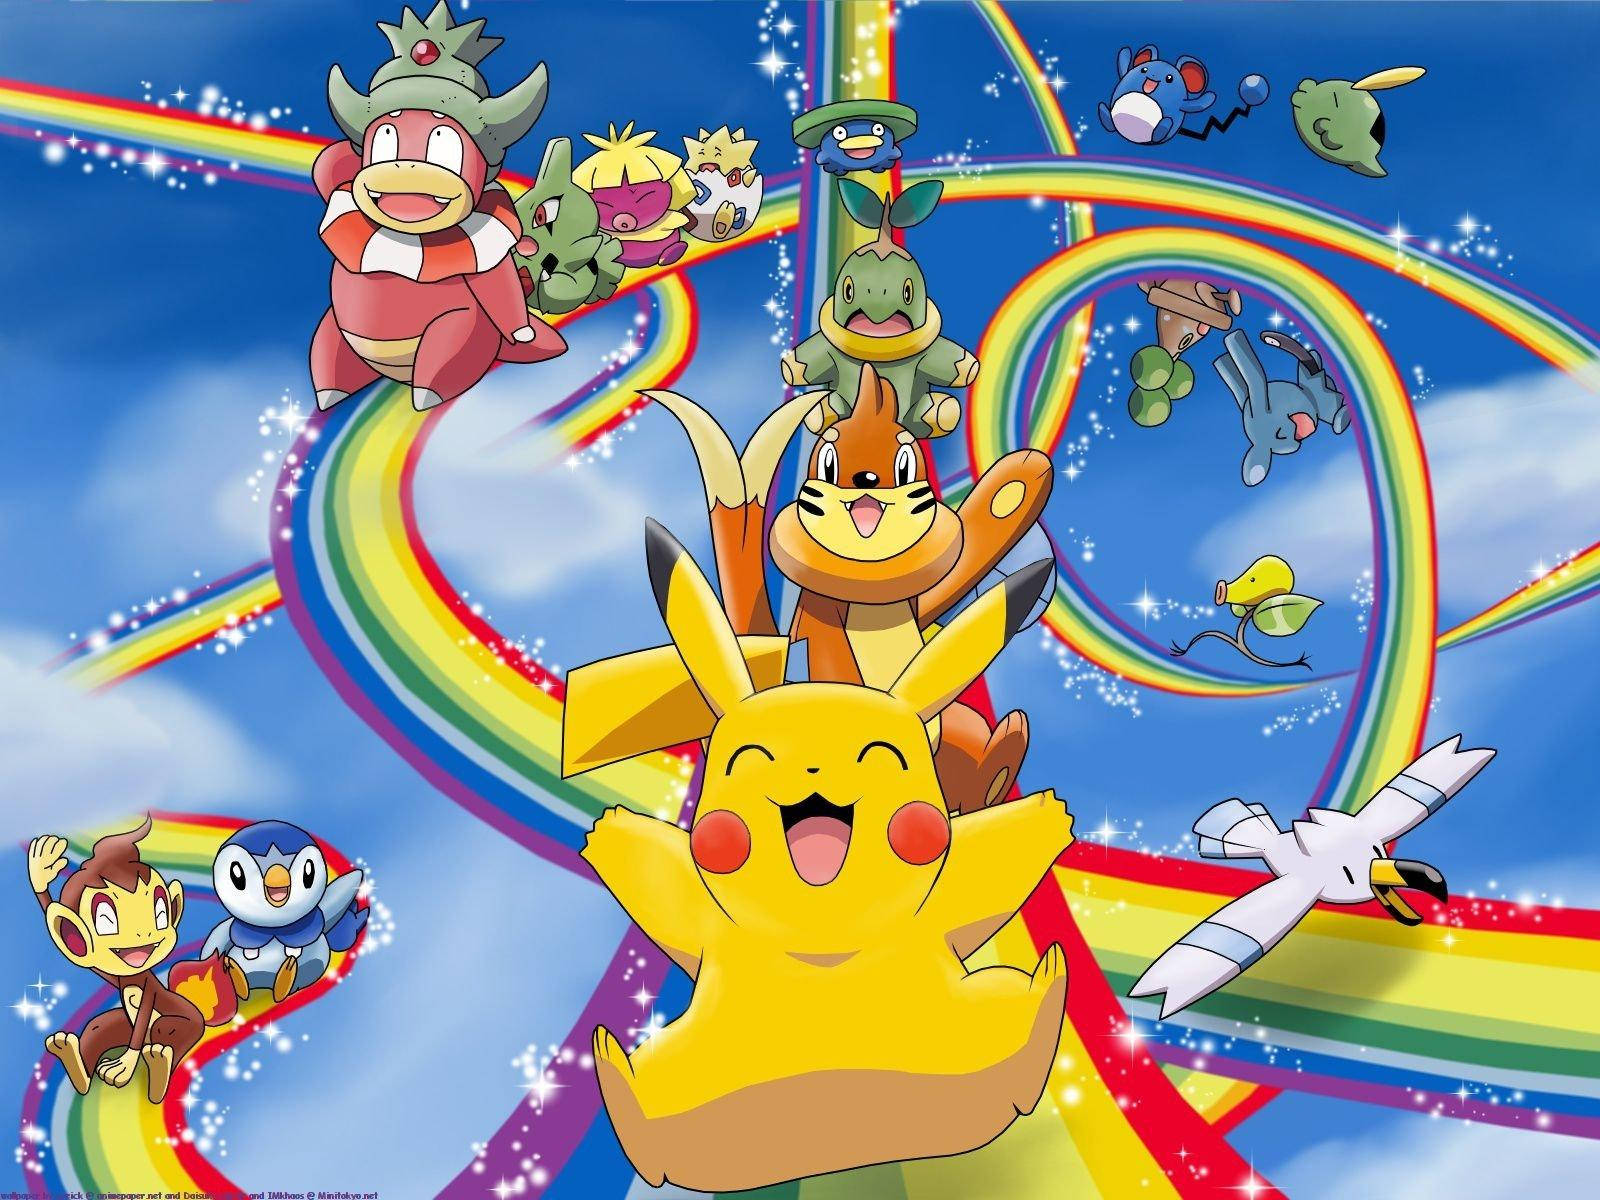 Free Cool Pokemon Wallpaper Downloads, Cool Pokemon Wallpaper for FREE